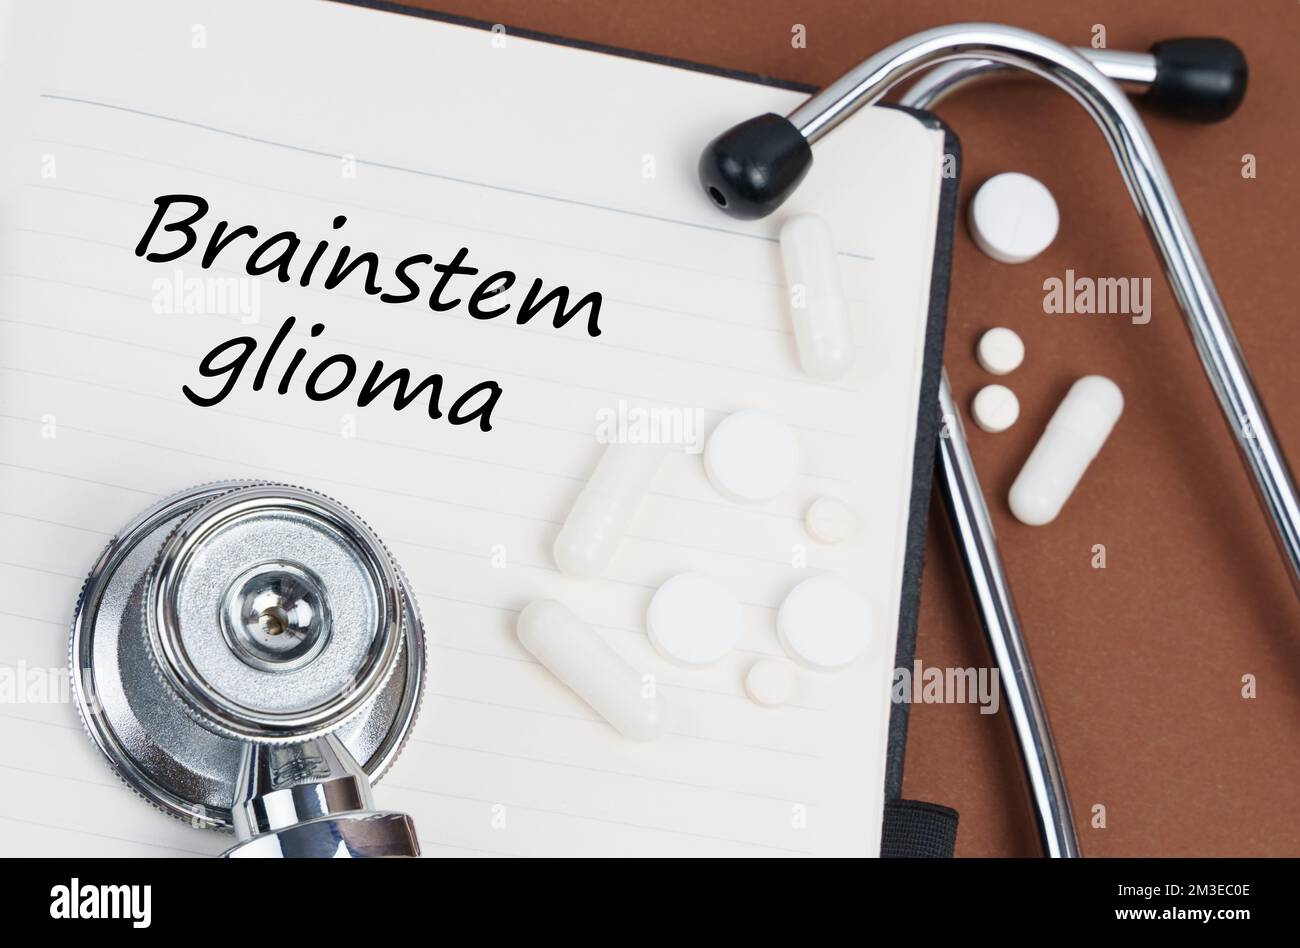 Medizin und Gesundheitskonzept. Auf einer braunen Oberfläche liegen Pillen, ein Stethoskop und ein Notizbuch mit der Inschrift "Brainstem Glioma" Stockfoto